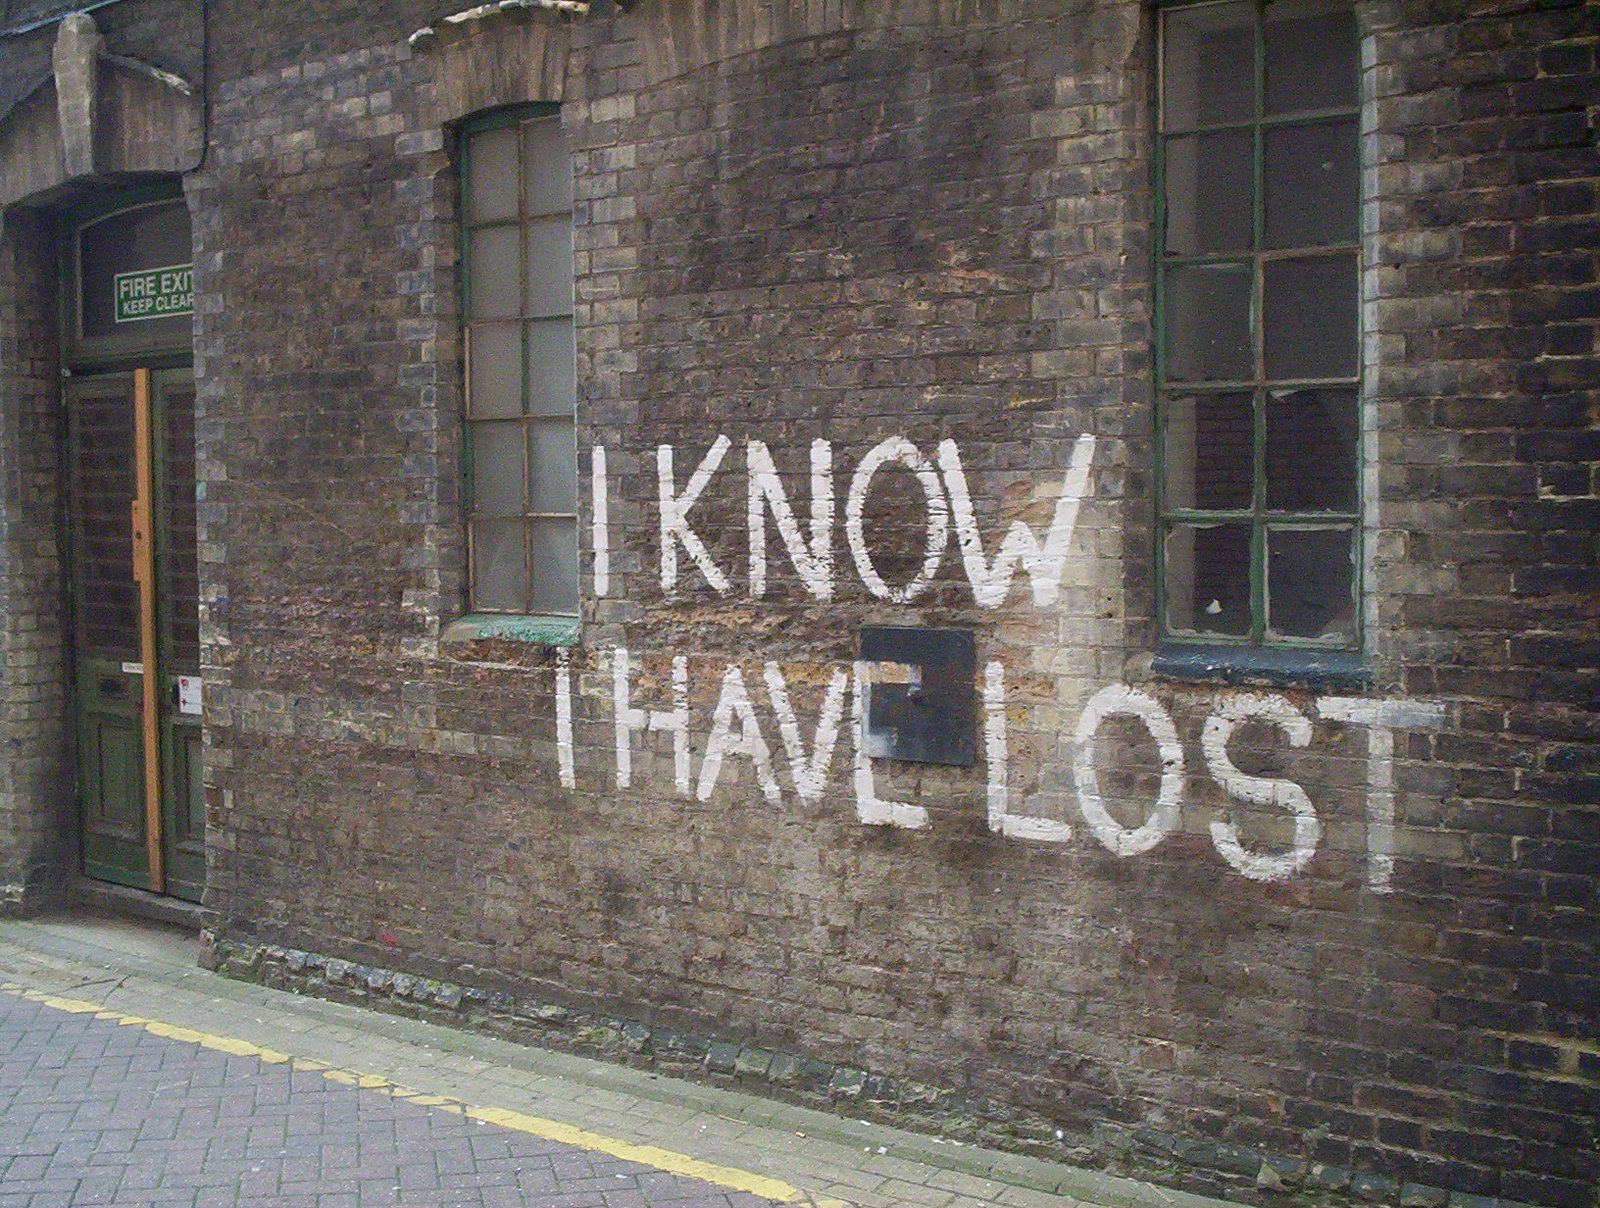 "I Know I Have Lost" (Je sais que j'ai perdu) écrit en grand sur un mur de briques sombes.